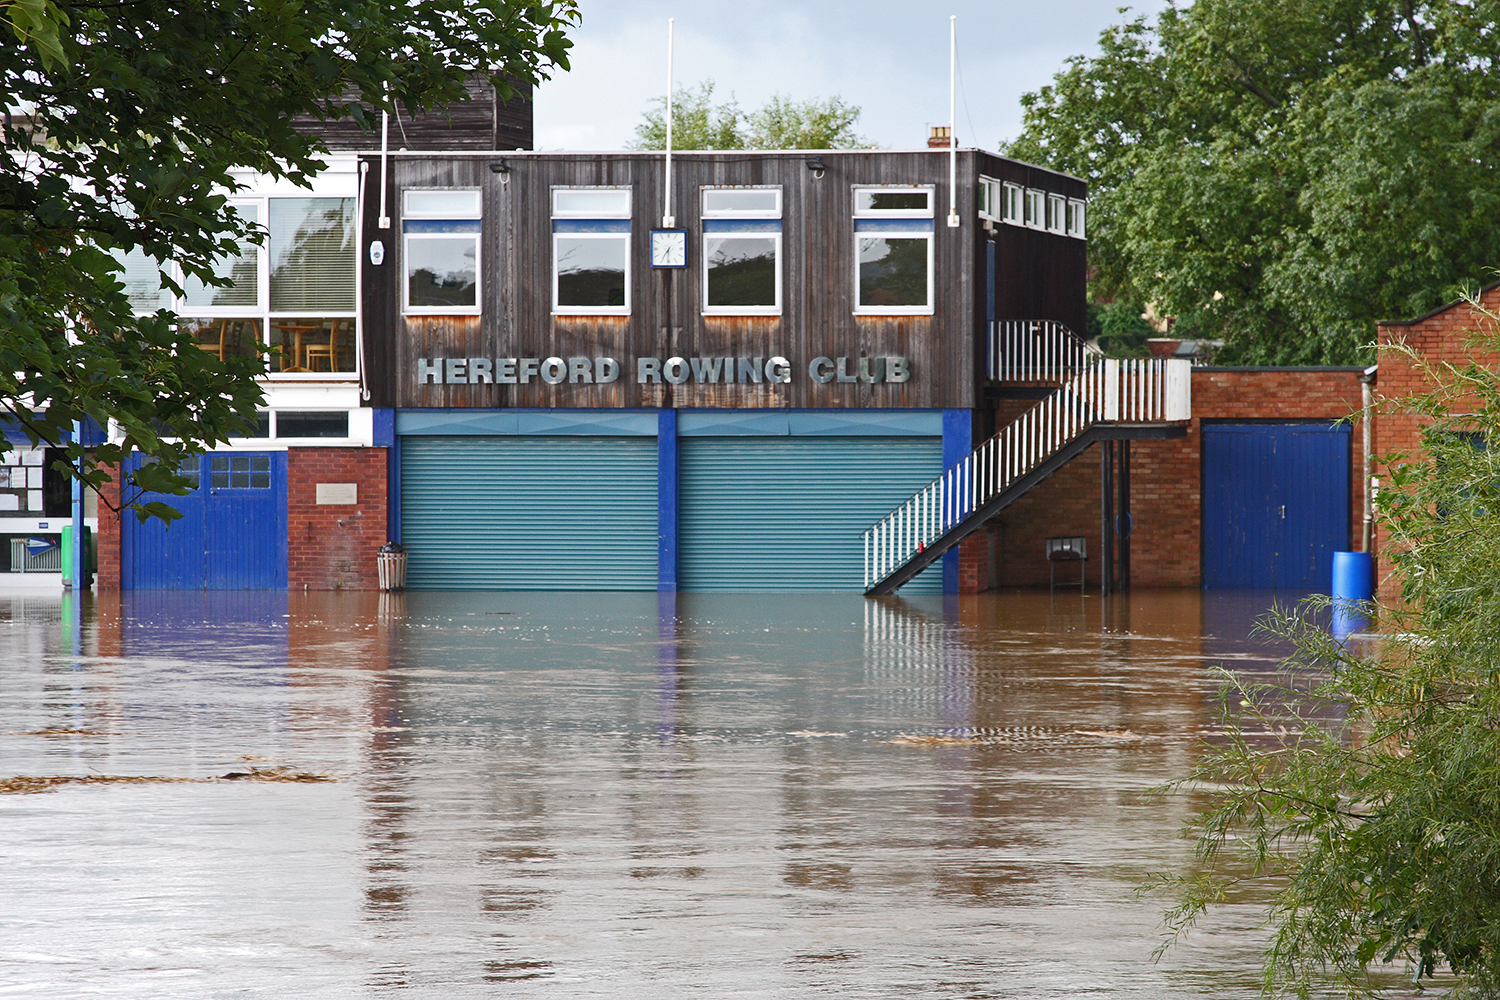 Floods, Hereford, River, Wye, Gwy, Rowing, Club, Bridge.